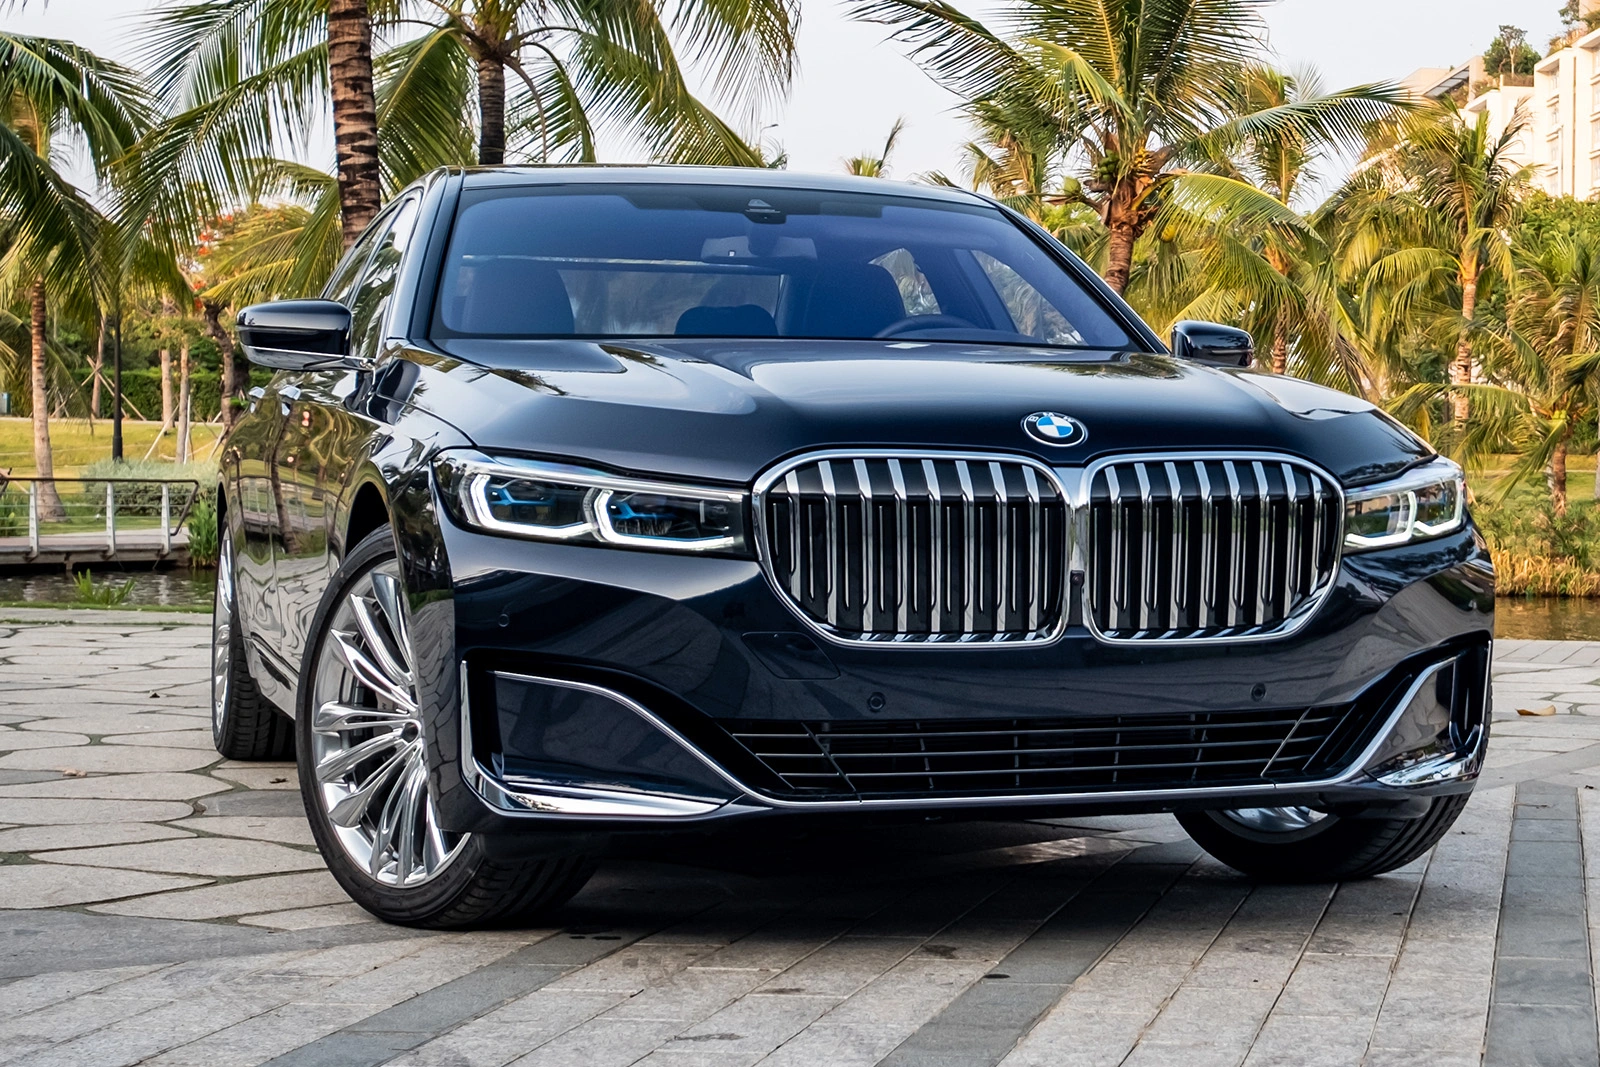 Tải hình ảnh BMW 7 Series chất lượng cao miễn phí 5